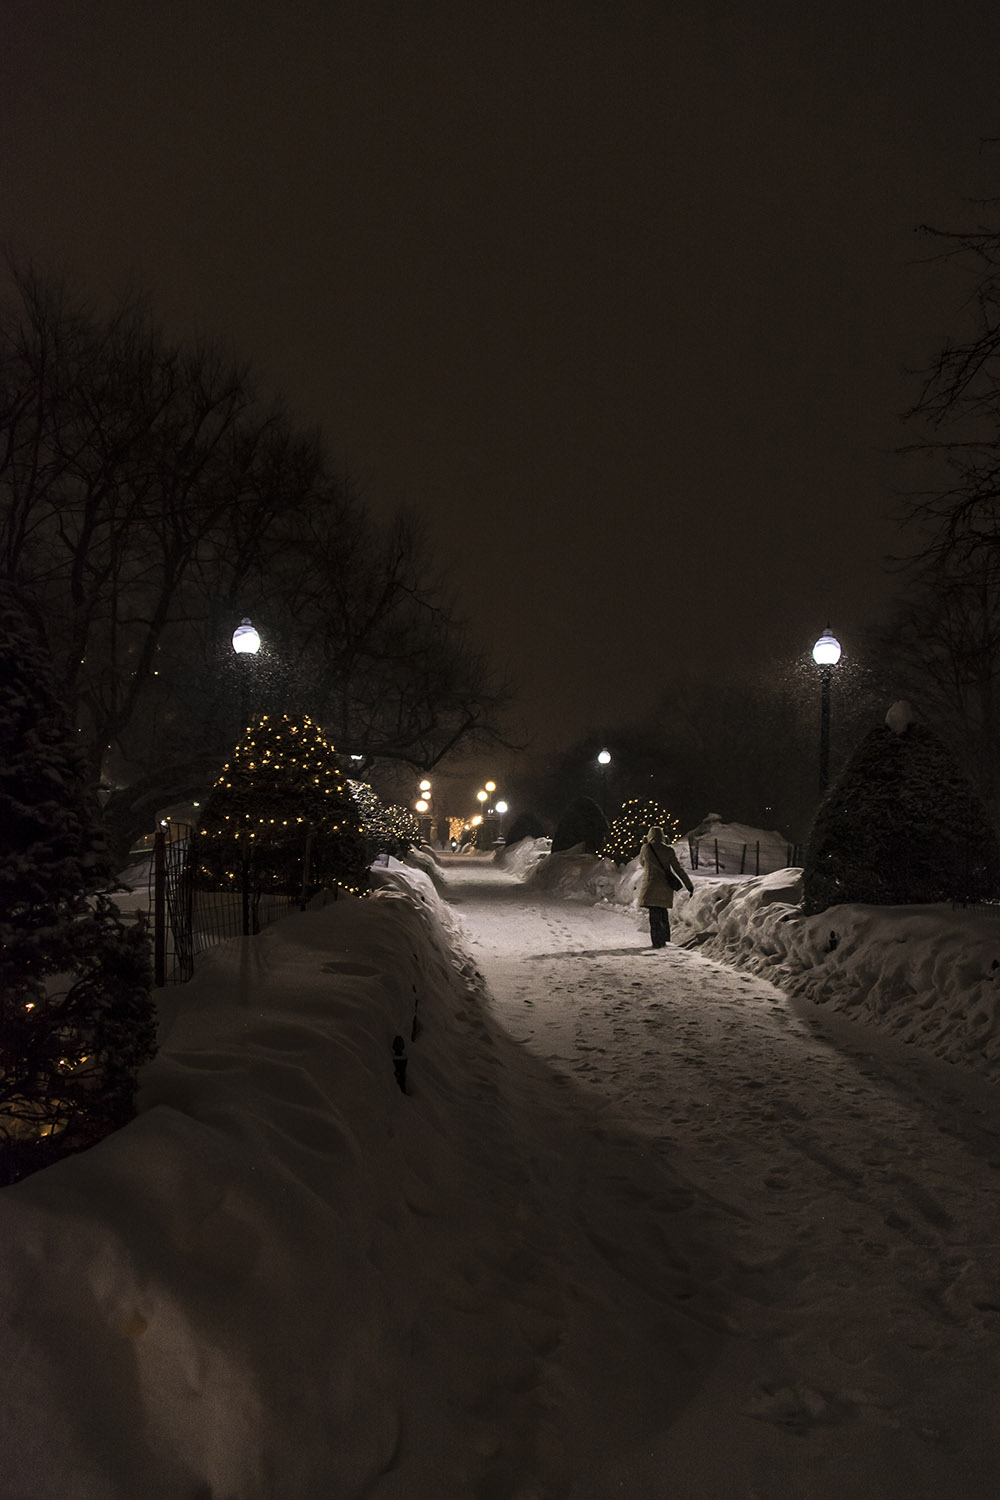 Boston Public Gardens at Night #58